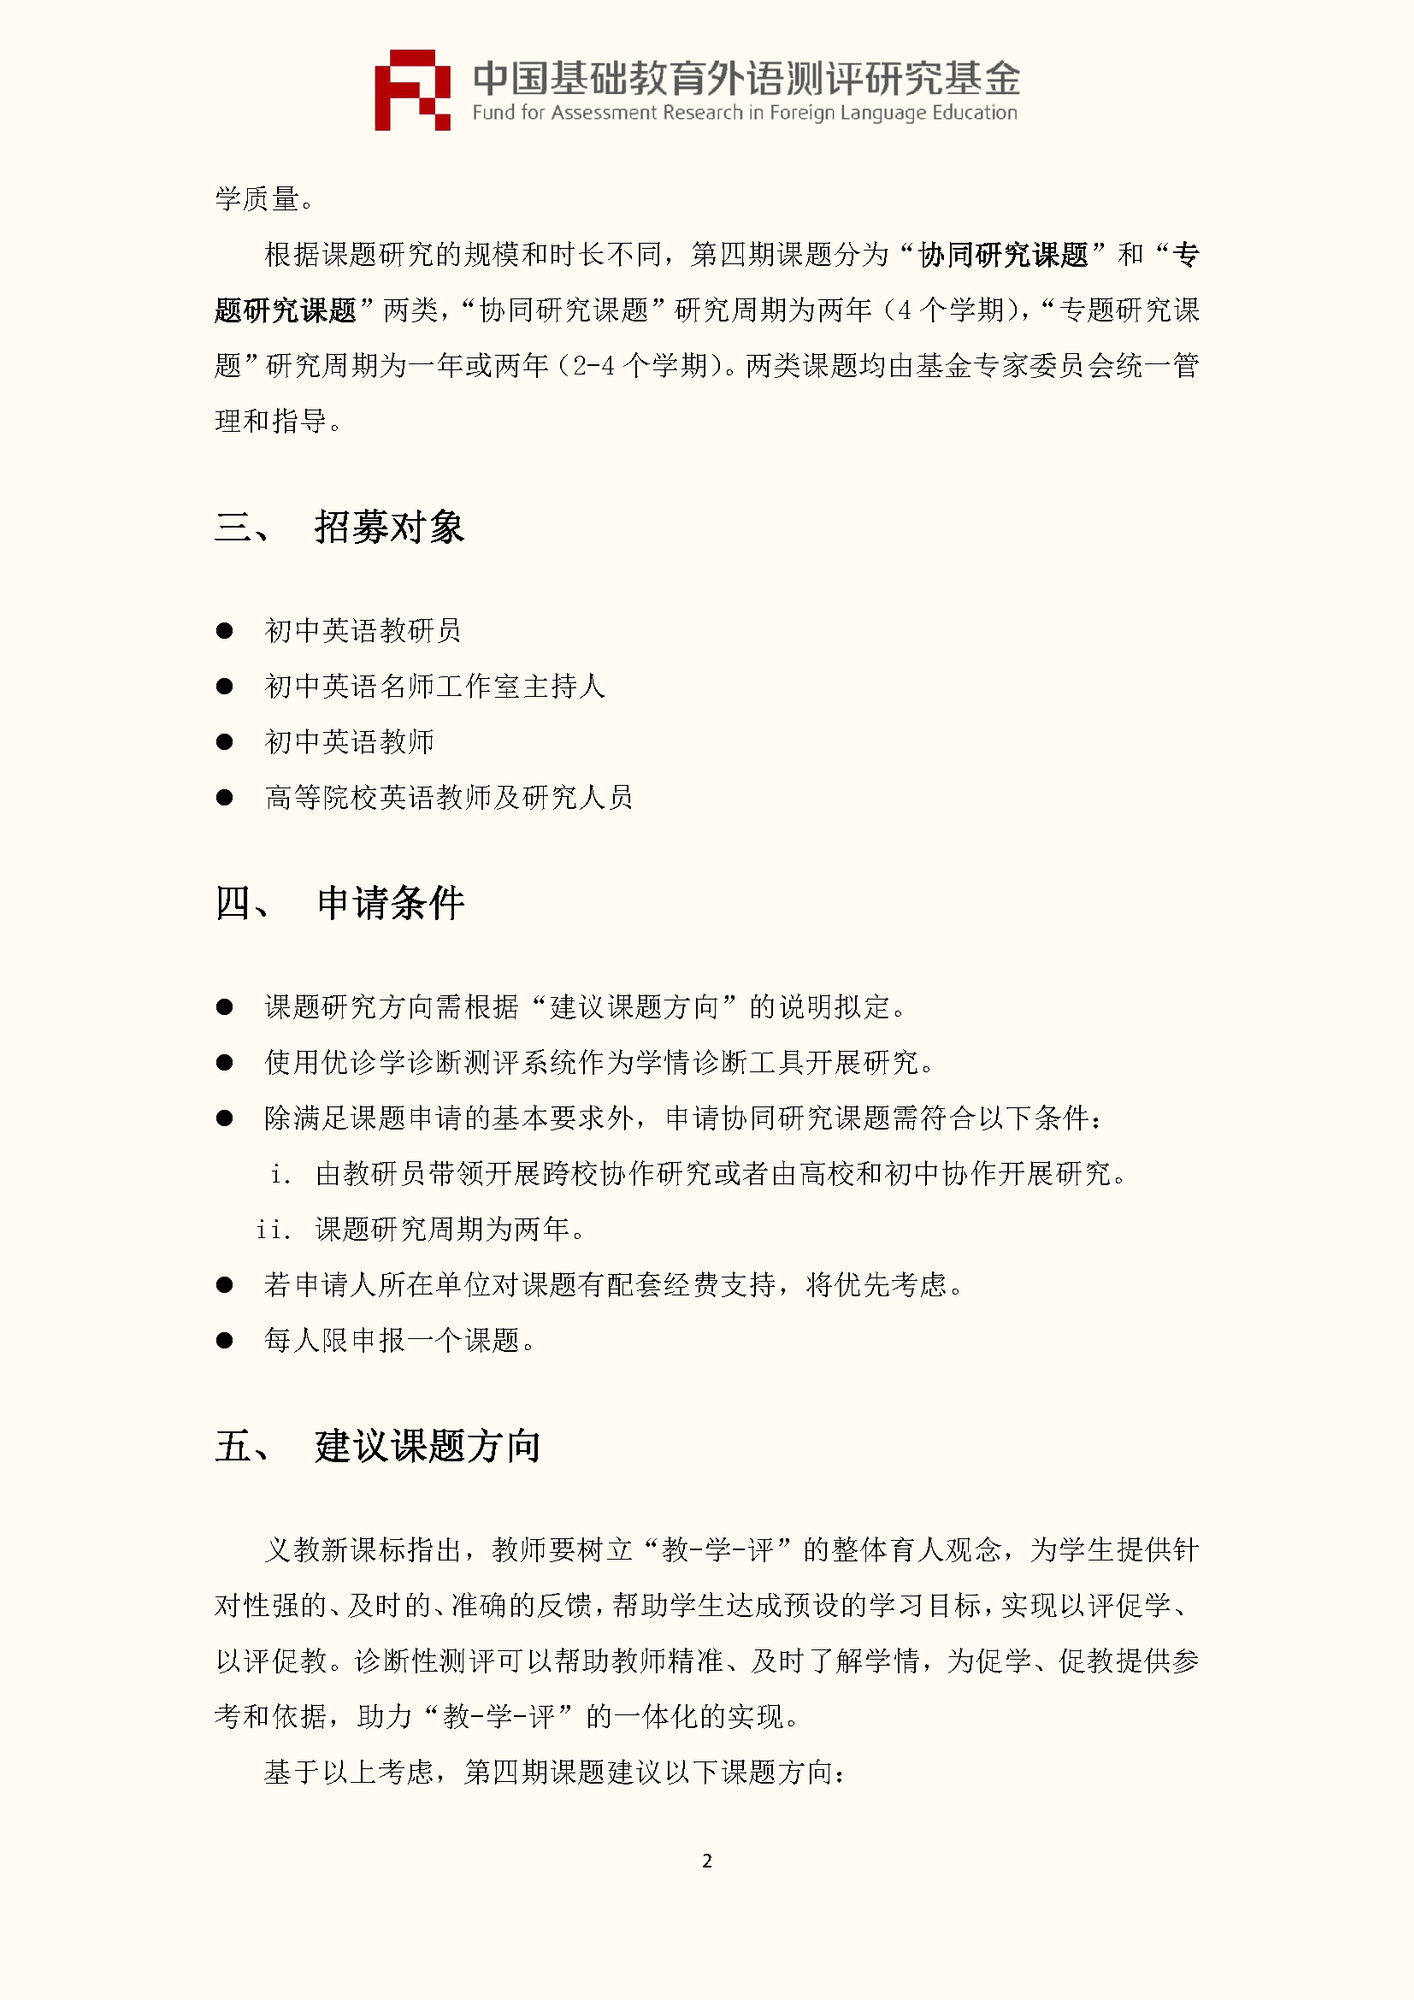 ”中国基础教育外语测评研究基金“项目第四期课题申报指南_页面_04